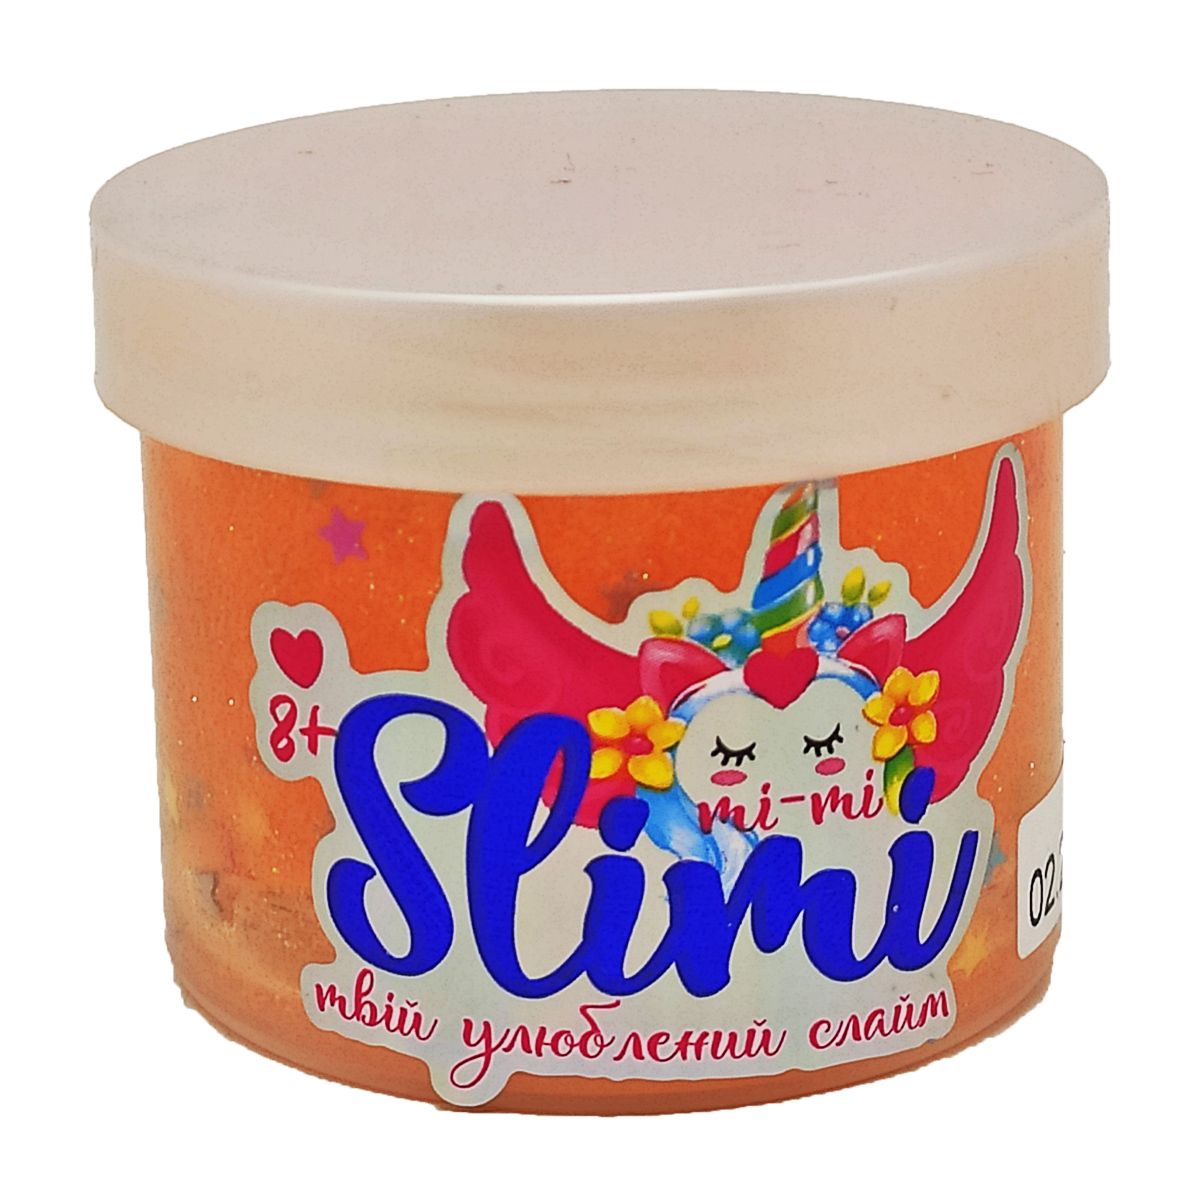 Слайм "Mi-mi Slimi" з глітером, 100 г (персиковий)